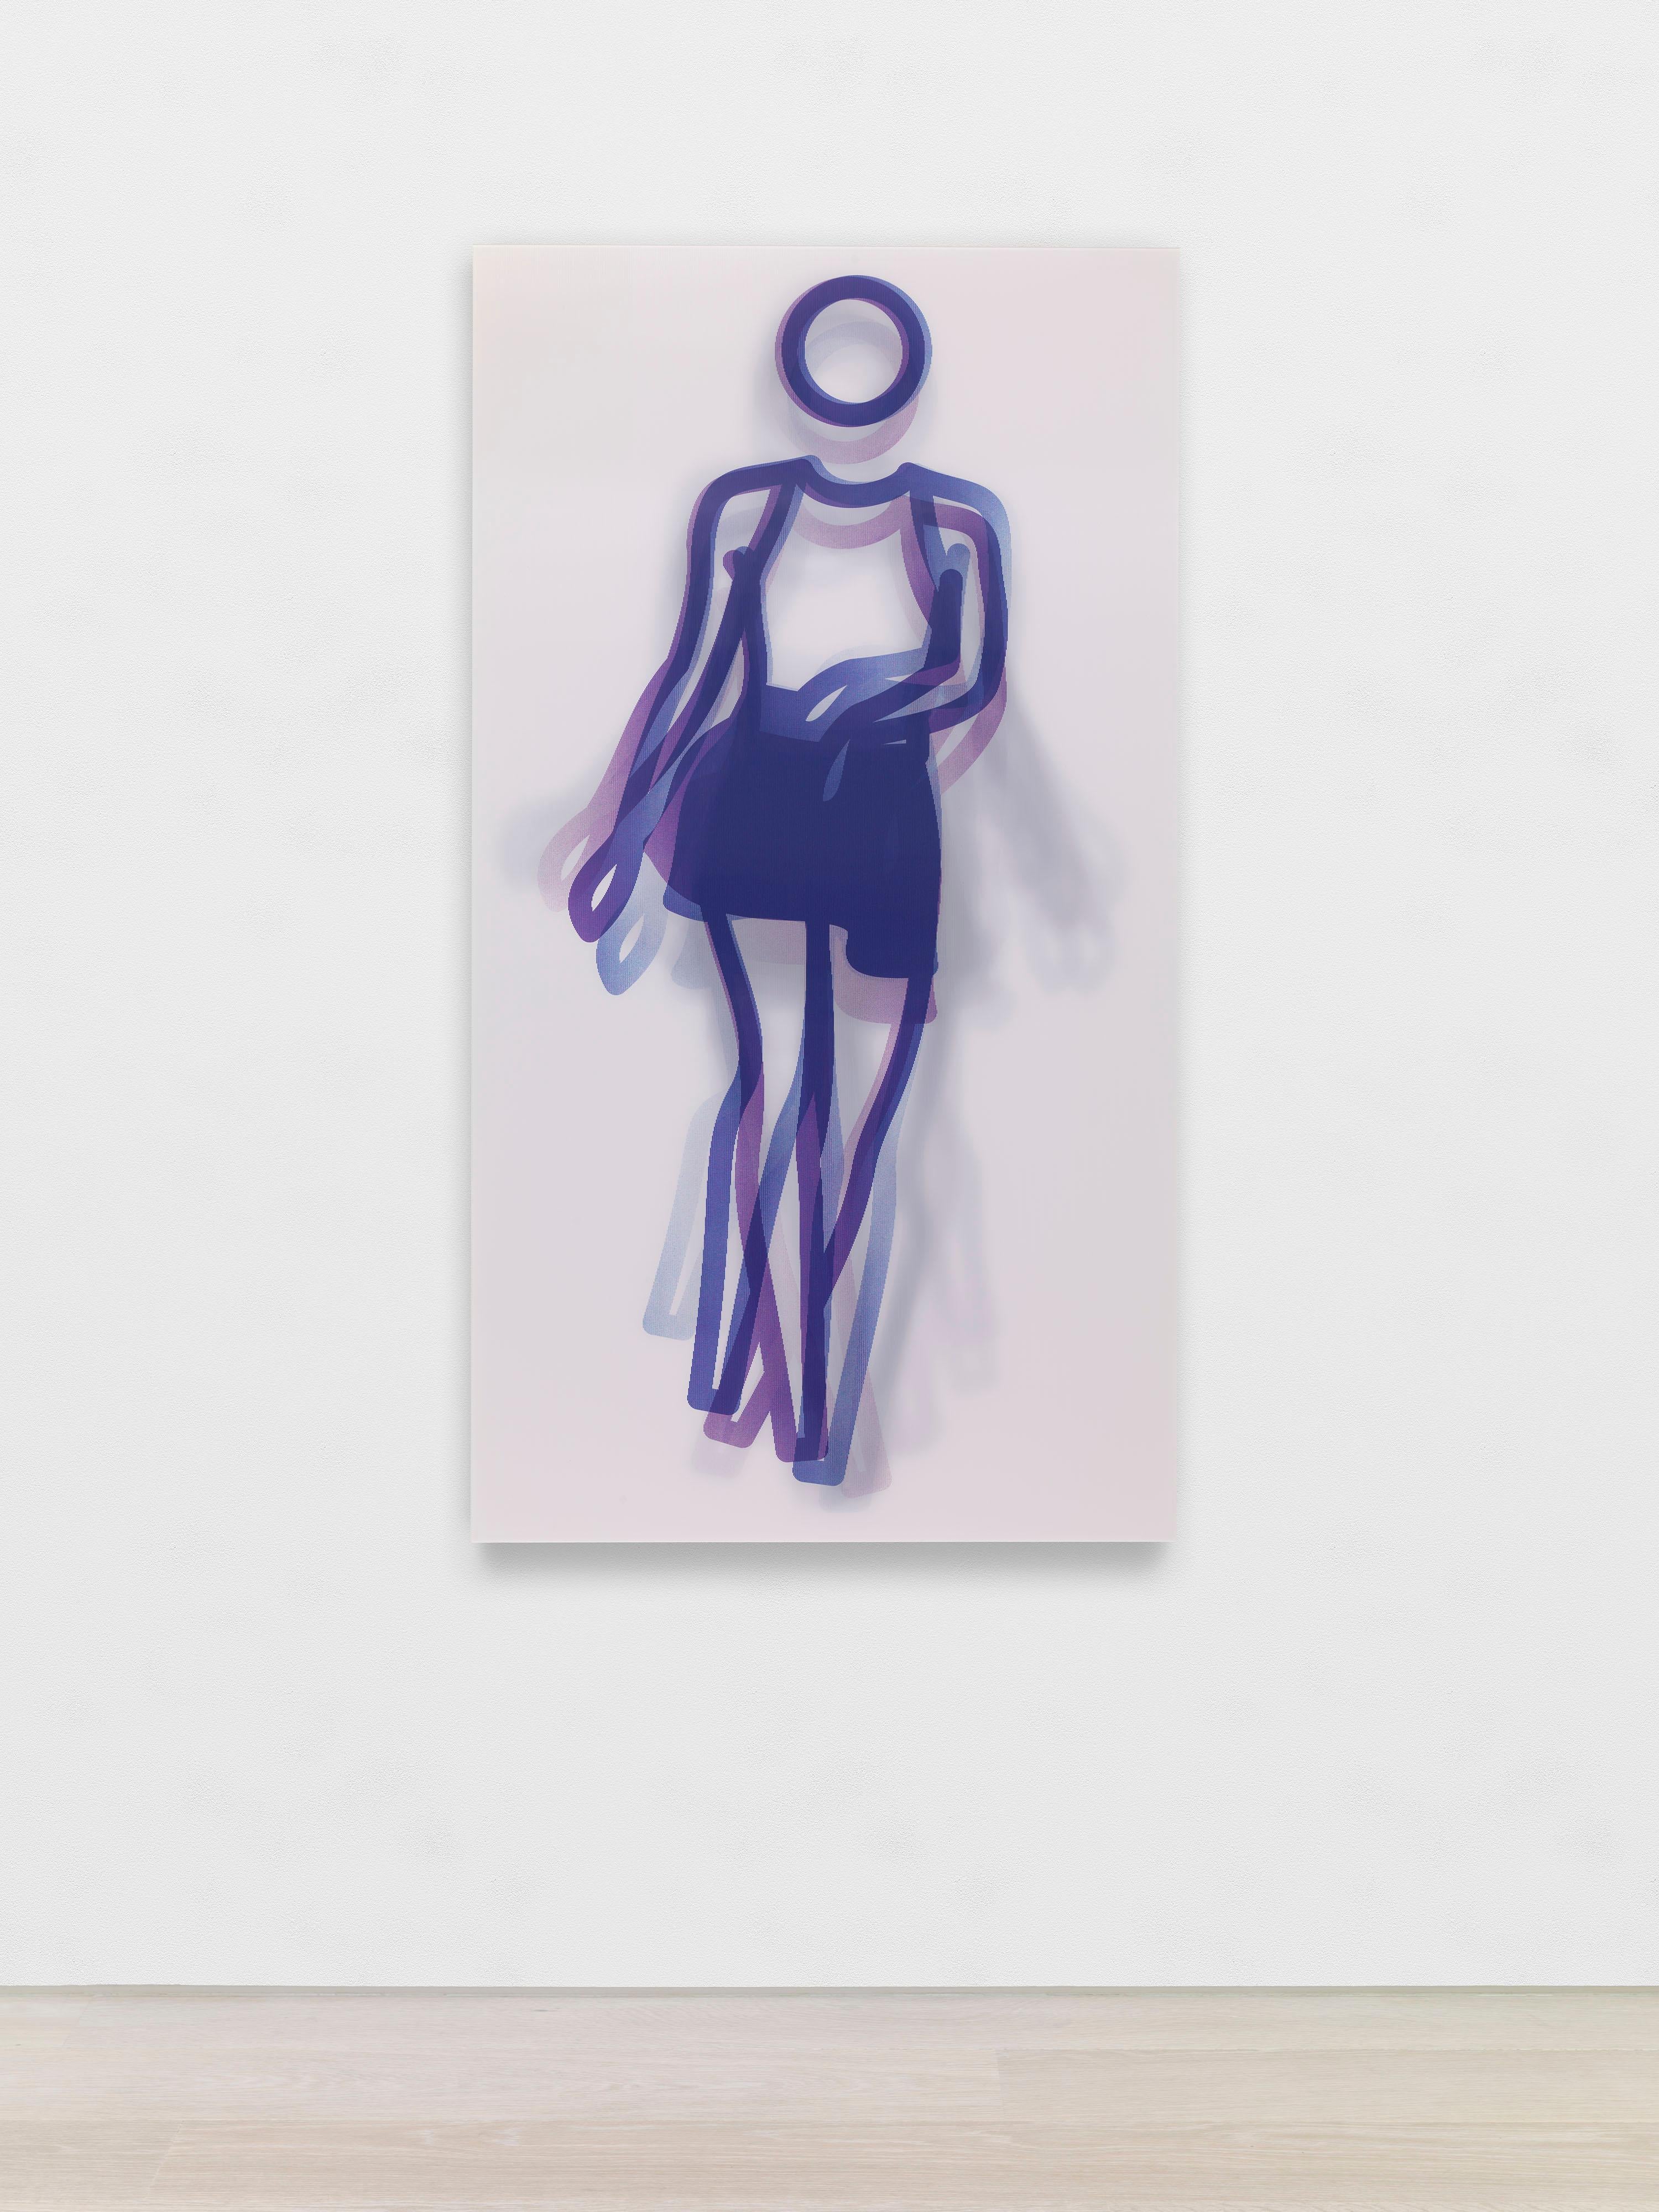 Figurative Print Julian Opie - Moving Large Contemporary Acrylic Panel of Dancing Figure, Four Colors, Dance 1 (panneau acrylique contemporain de grande taille représentant une figure dansante) 